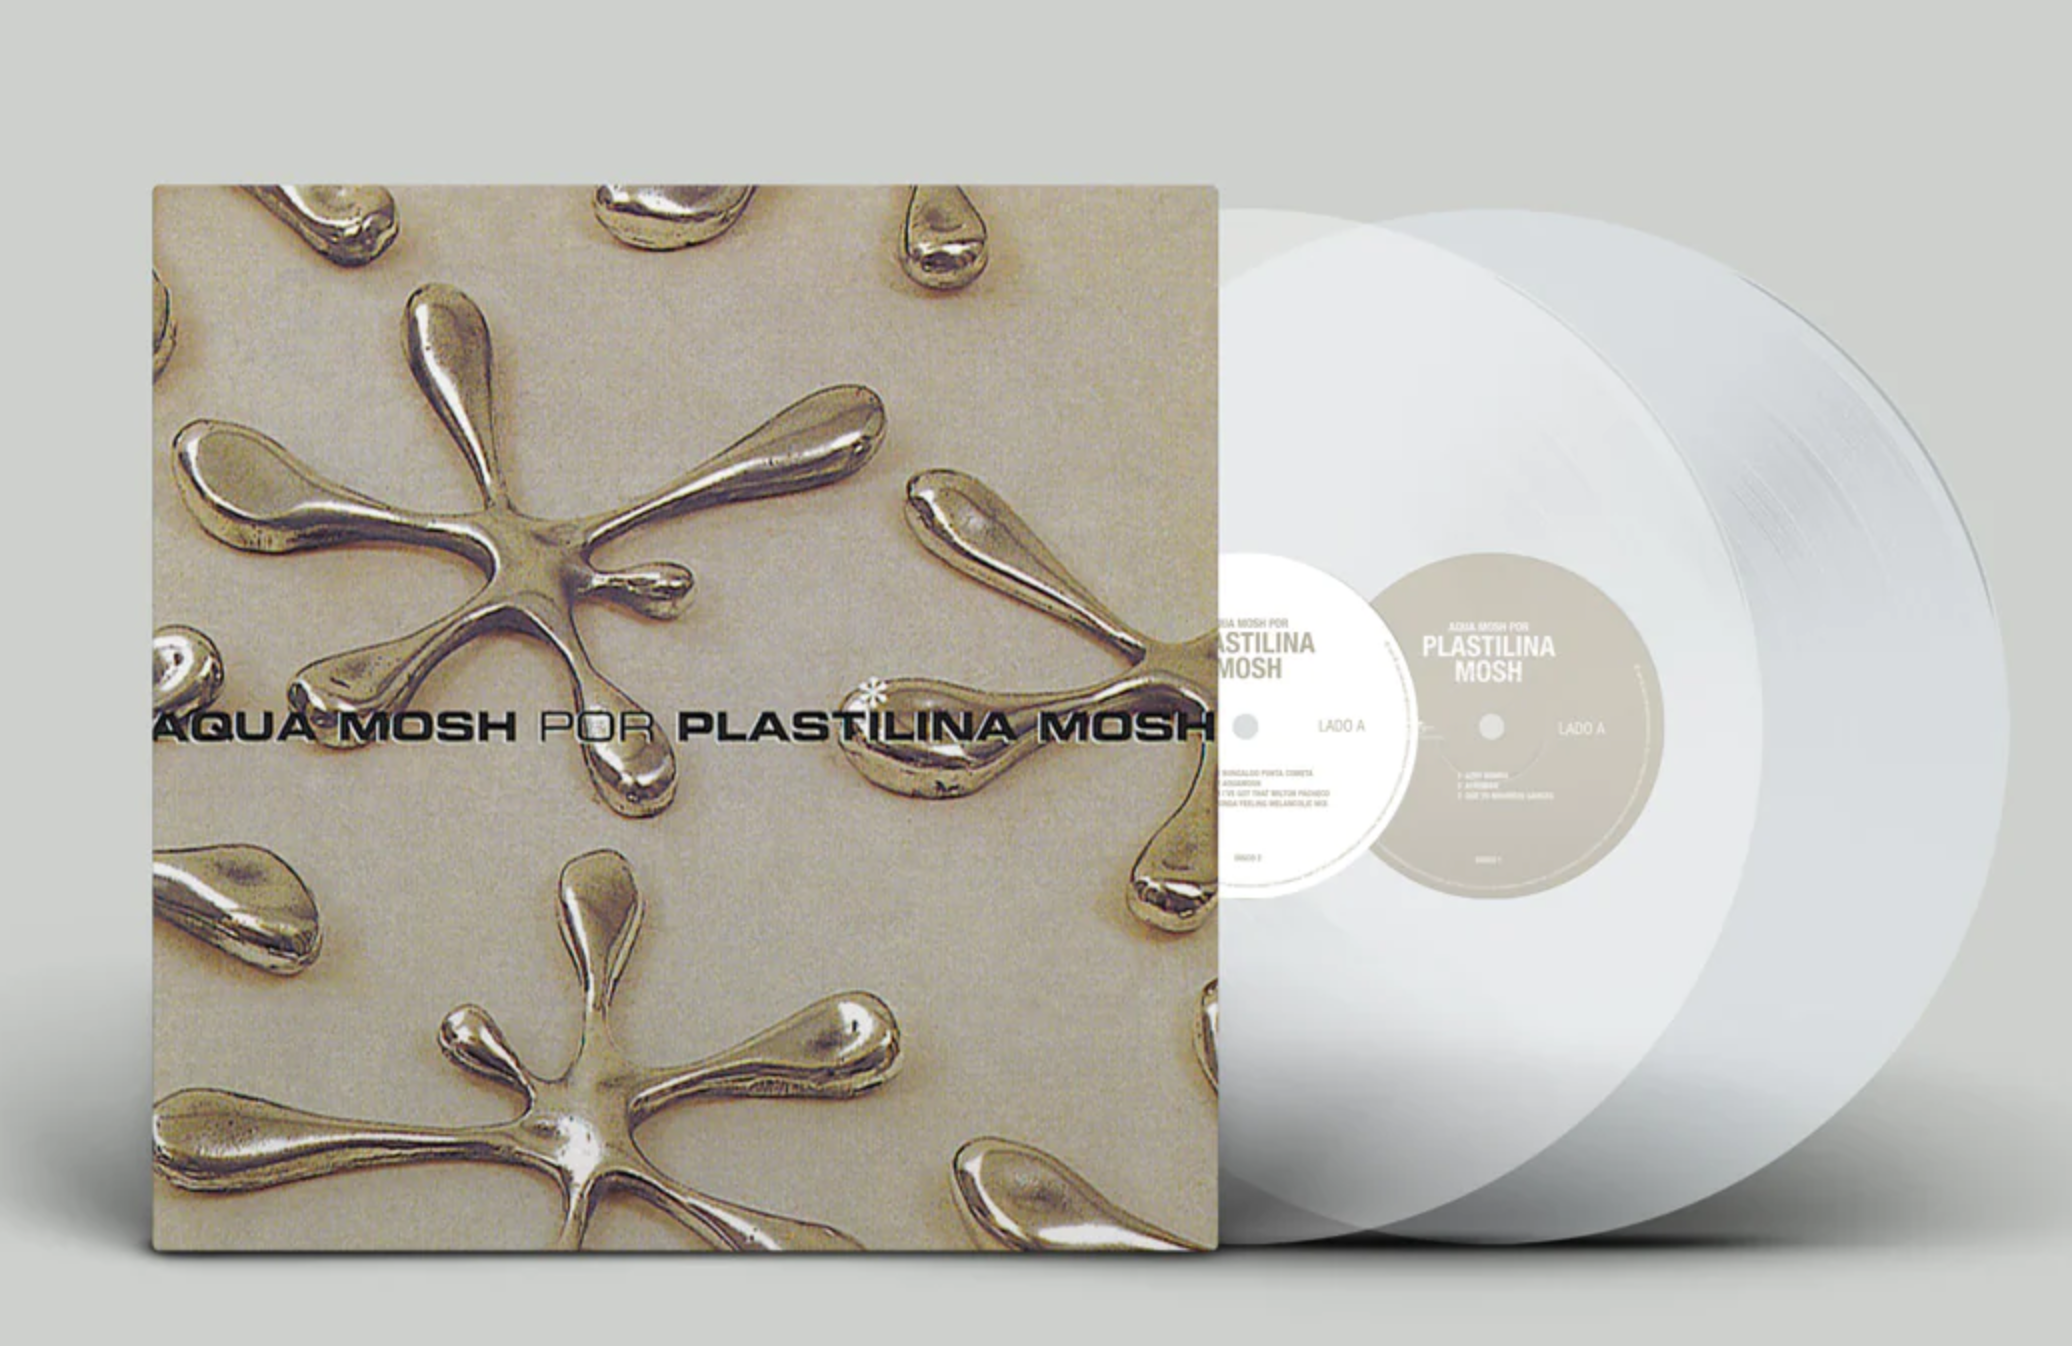 Plastilina Mosh celebra 25 años del 'Aquamosh' con esta edición de vinilo